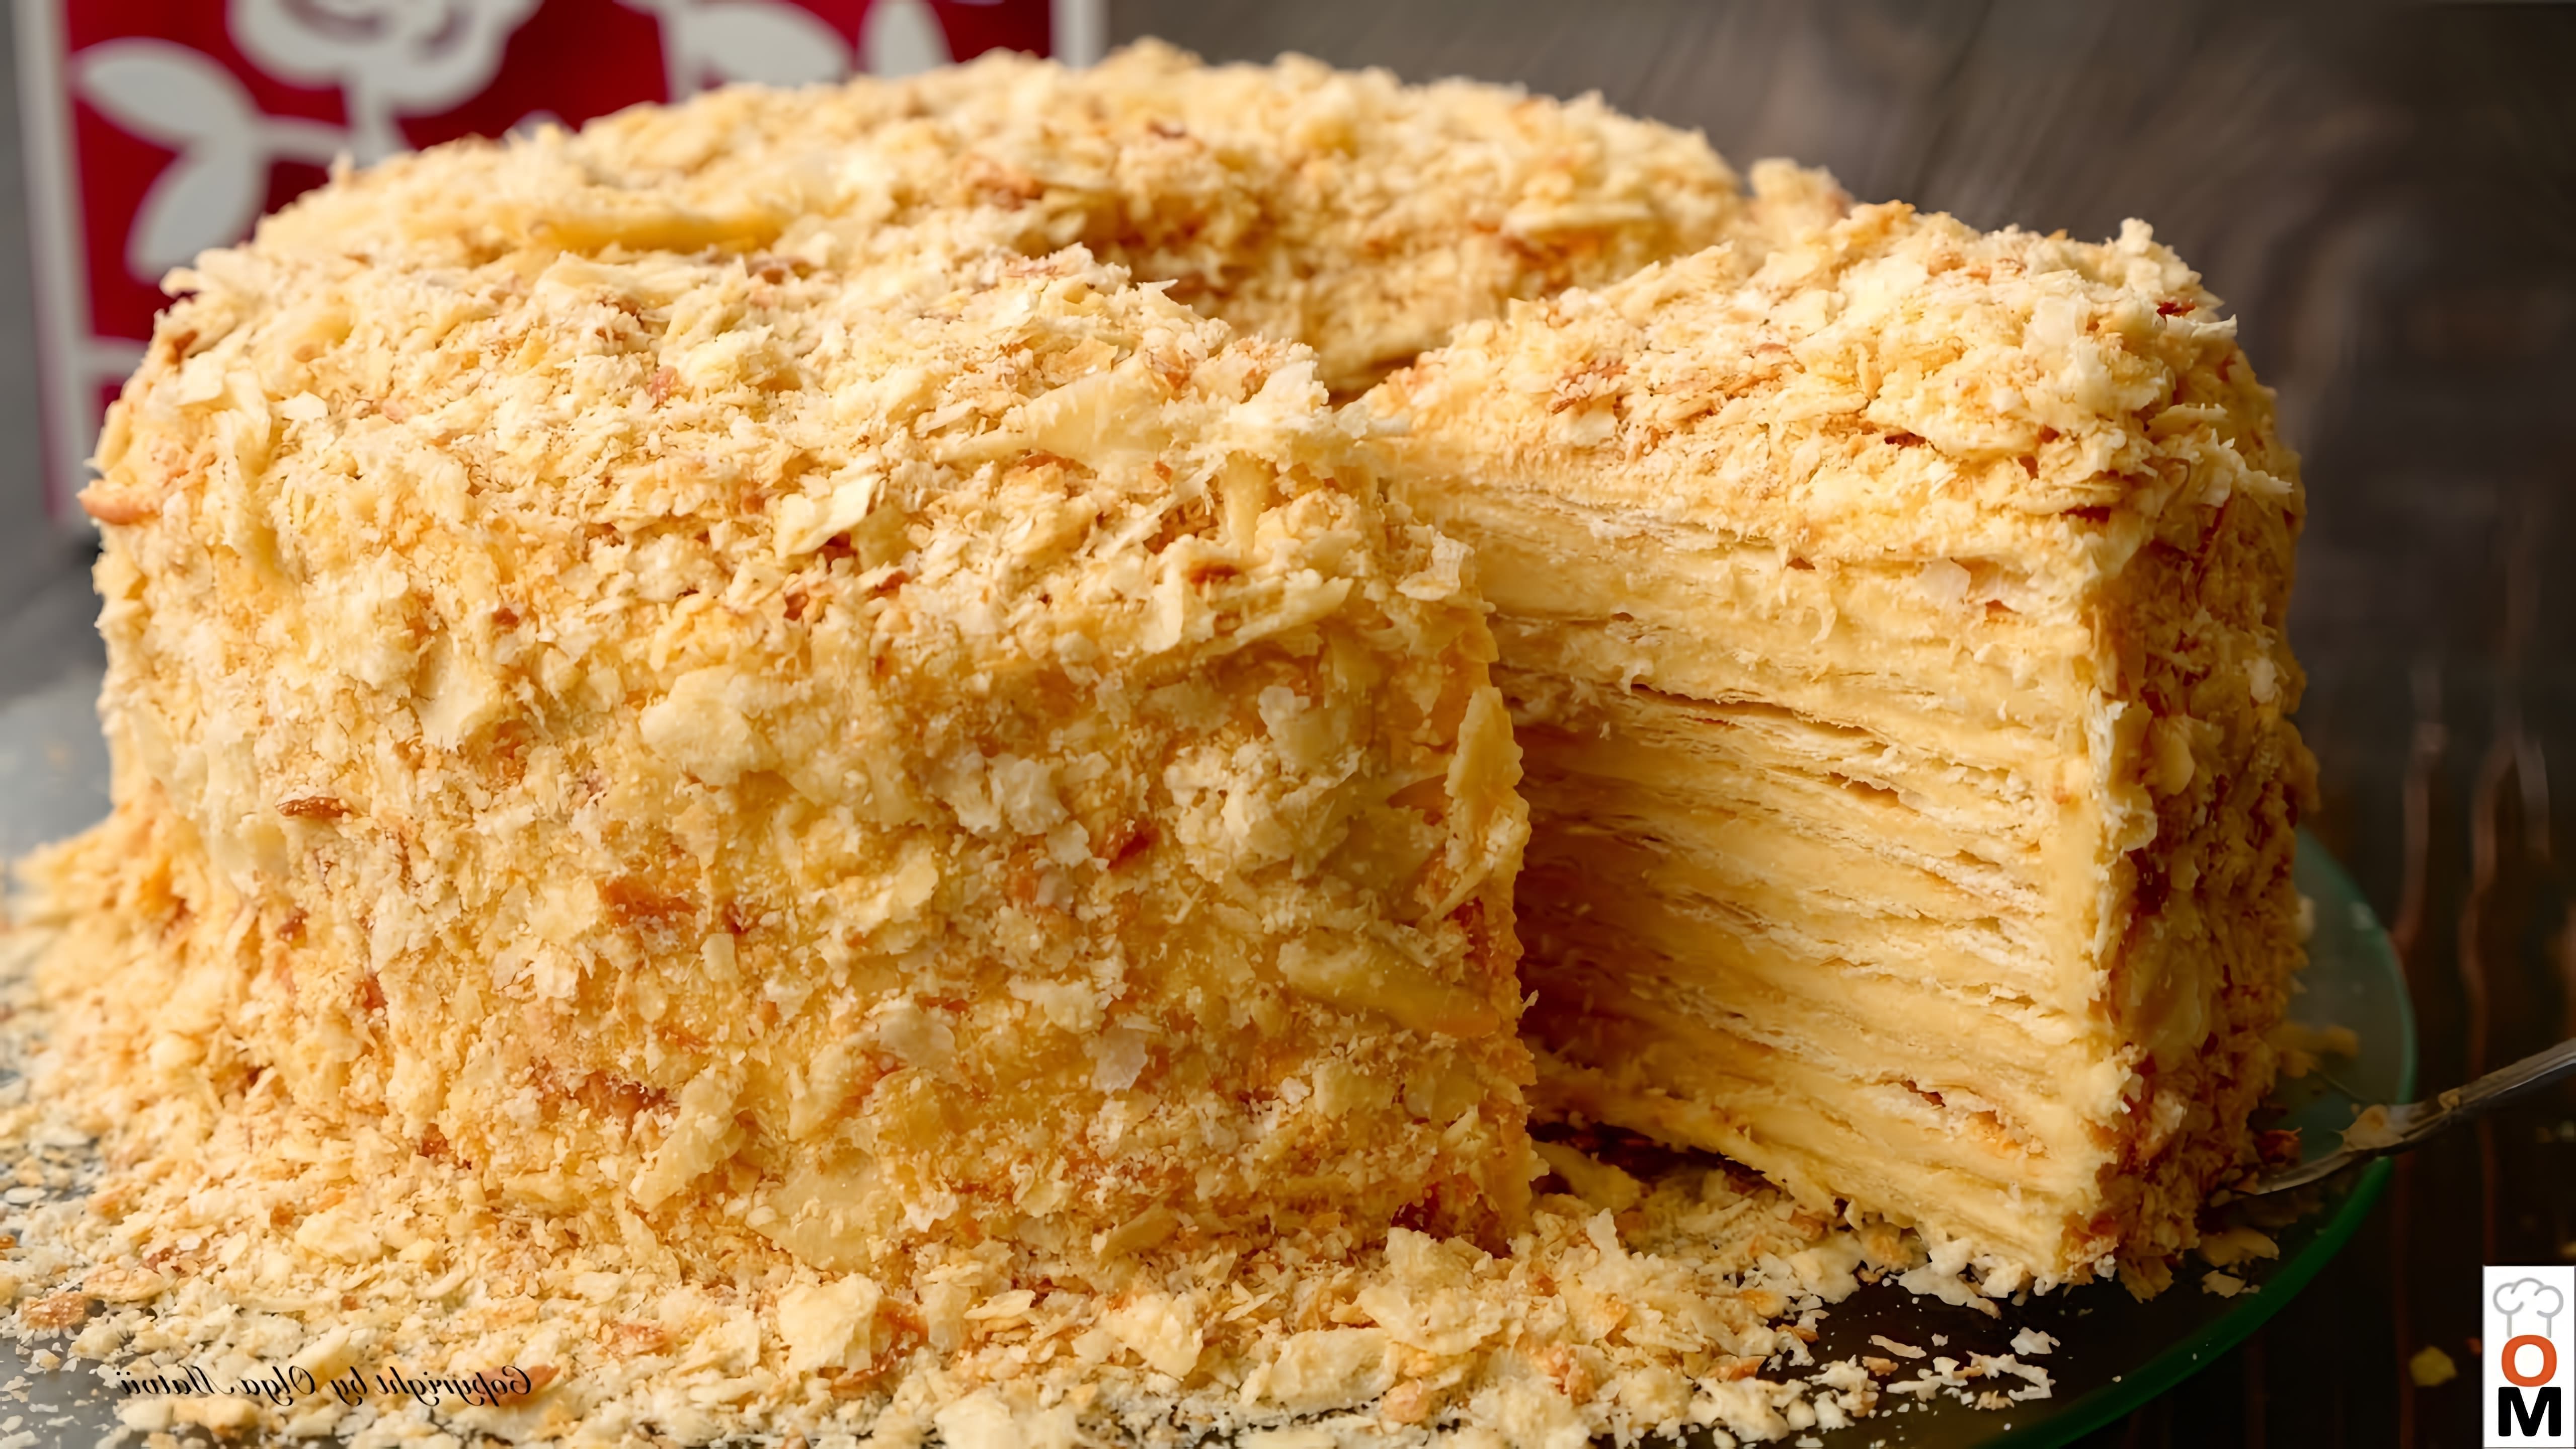 В этом видео демонстрируется процесс приготовления торта "Наполеон" с использованием двух видов теста: песочного и слоеного